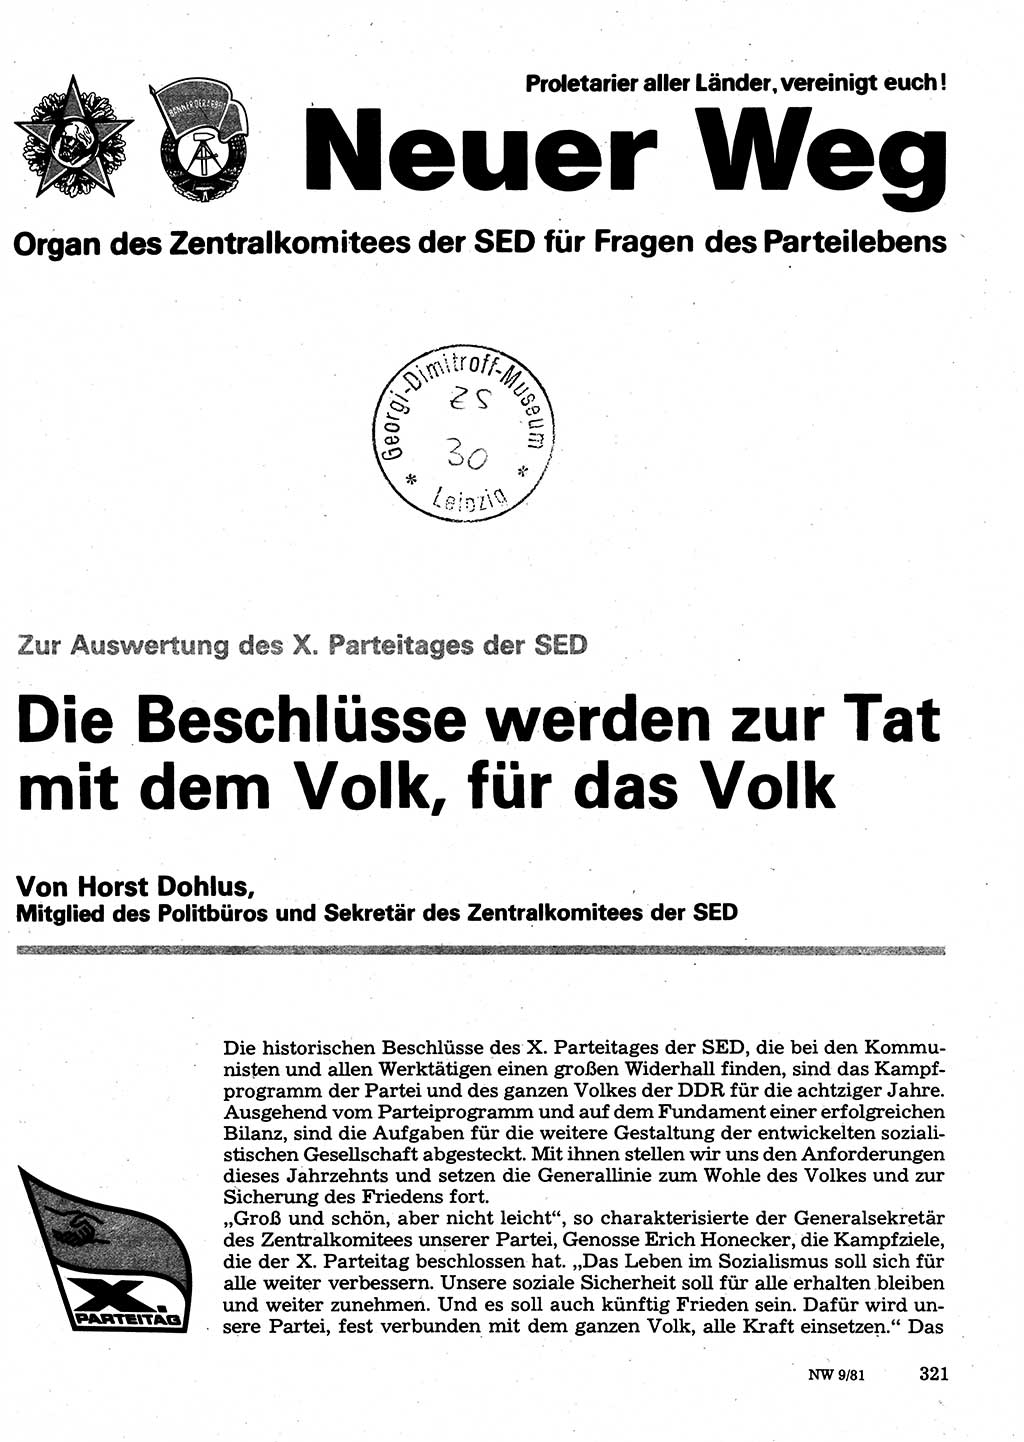 Neuer Weg (NW), Organ des Zentralkomitees (ZK) der SED (Sozialistische Einheitspartei Deutschlands) für Fragen des Parteilebens, 36. Jahrgang [Deutsche Demokratische Republik (DDR)] 1981, Seite 321 (NW ZK SED DDR 1981, S. 321)